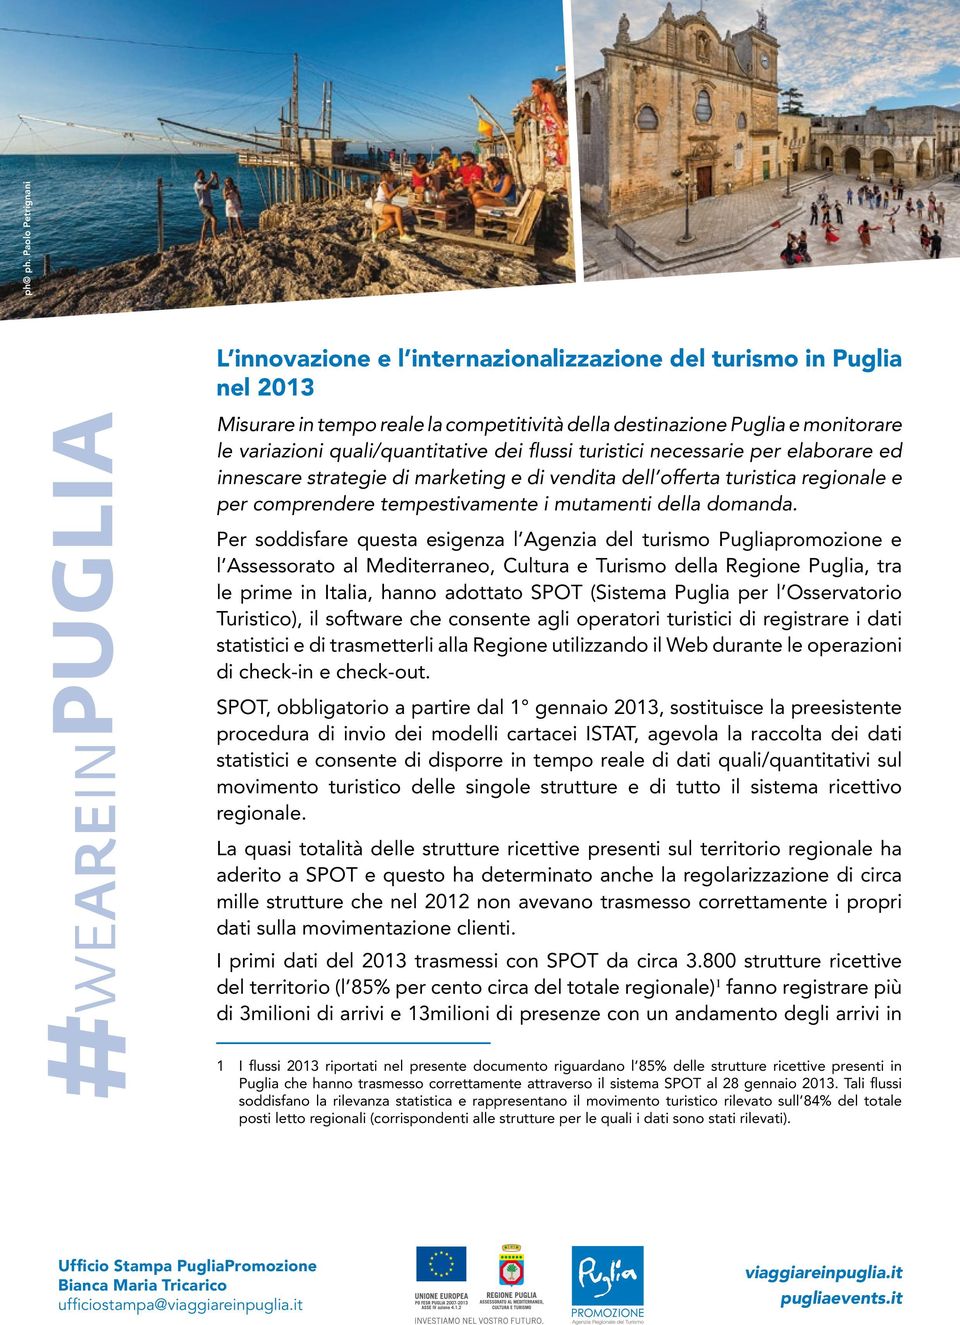 Per soddisfare questa esigenza l Agenzia del turismo Pugliapromozione e l Assessorato al Mediterraneo, Cultura e Turismo della Regione Puglia, tra le prime in Italia, hanno adottato SPOT (Sistema